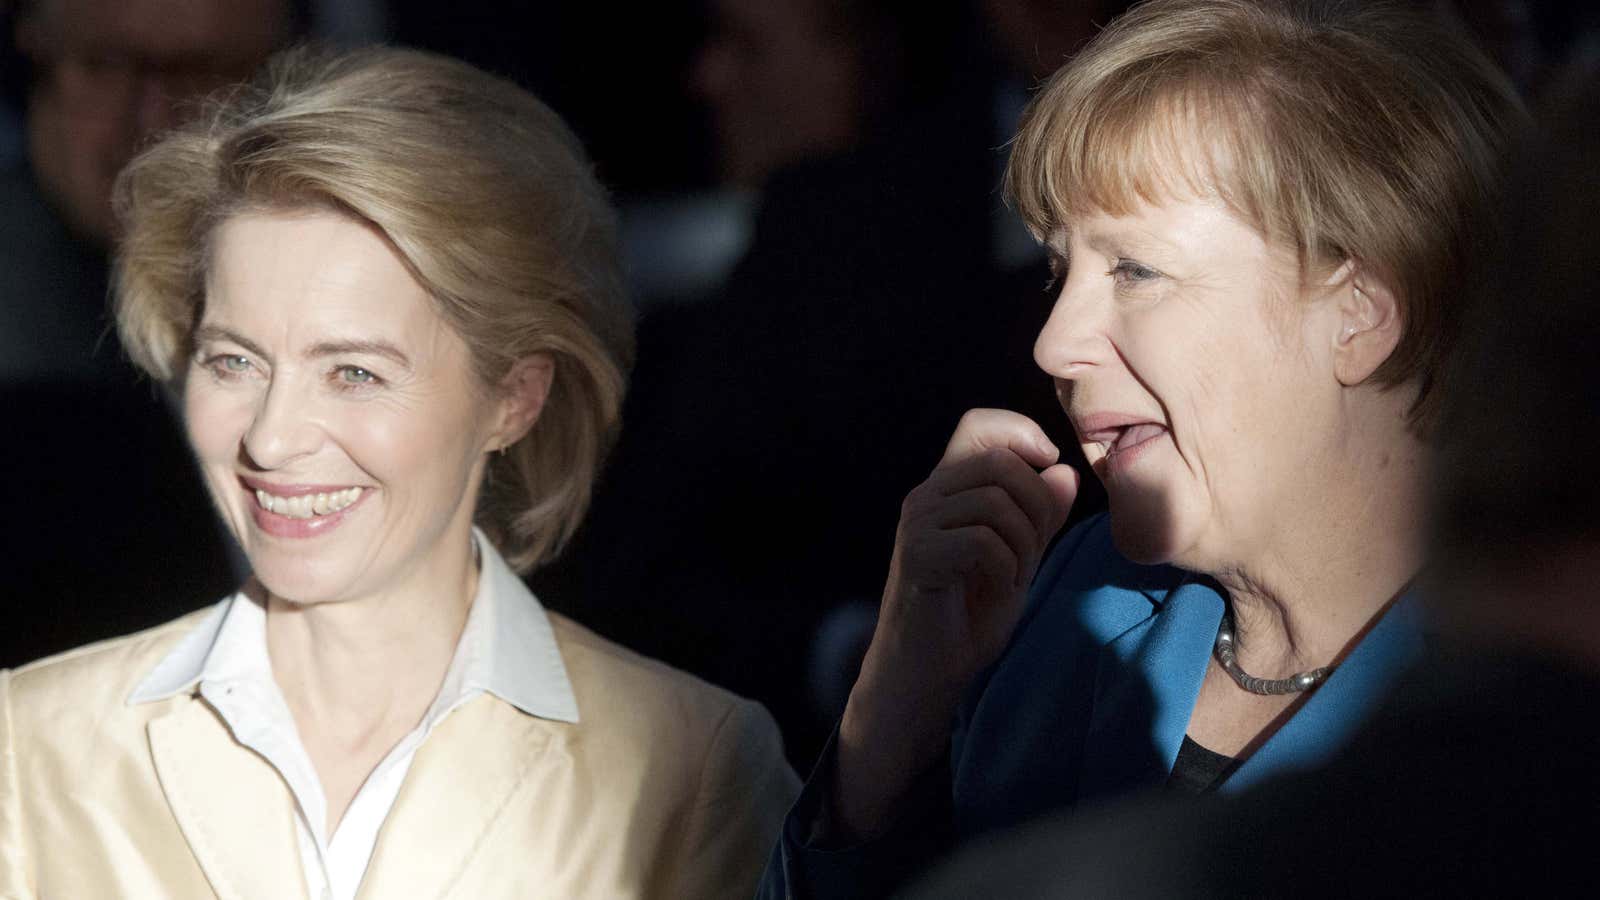 Move over, Merkel? Defense minister Ursula von der Leyen is in the spotlight.